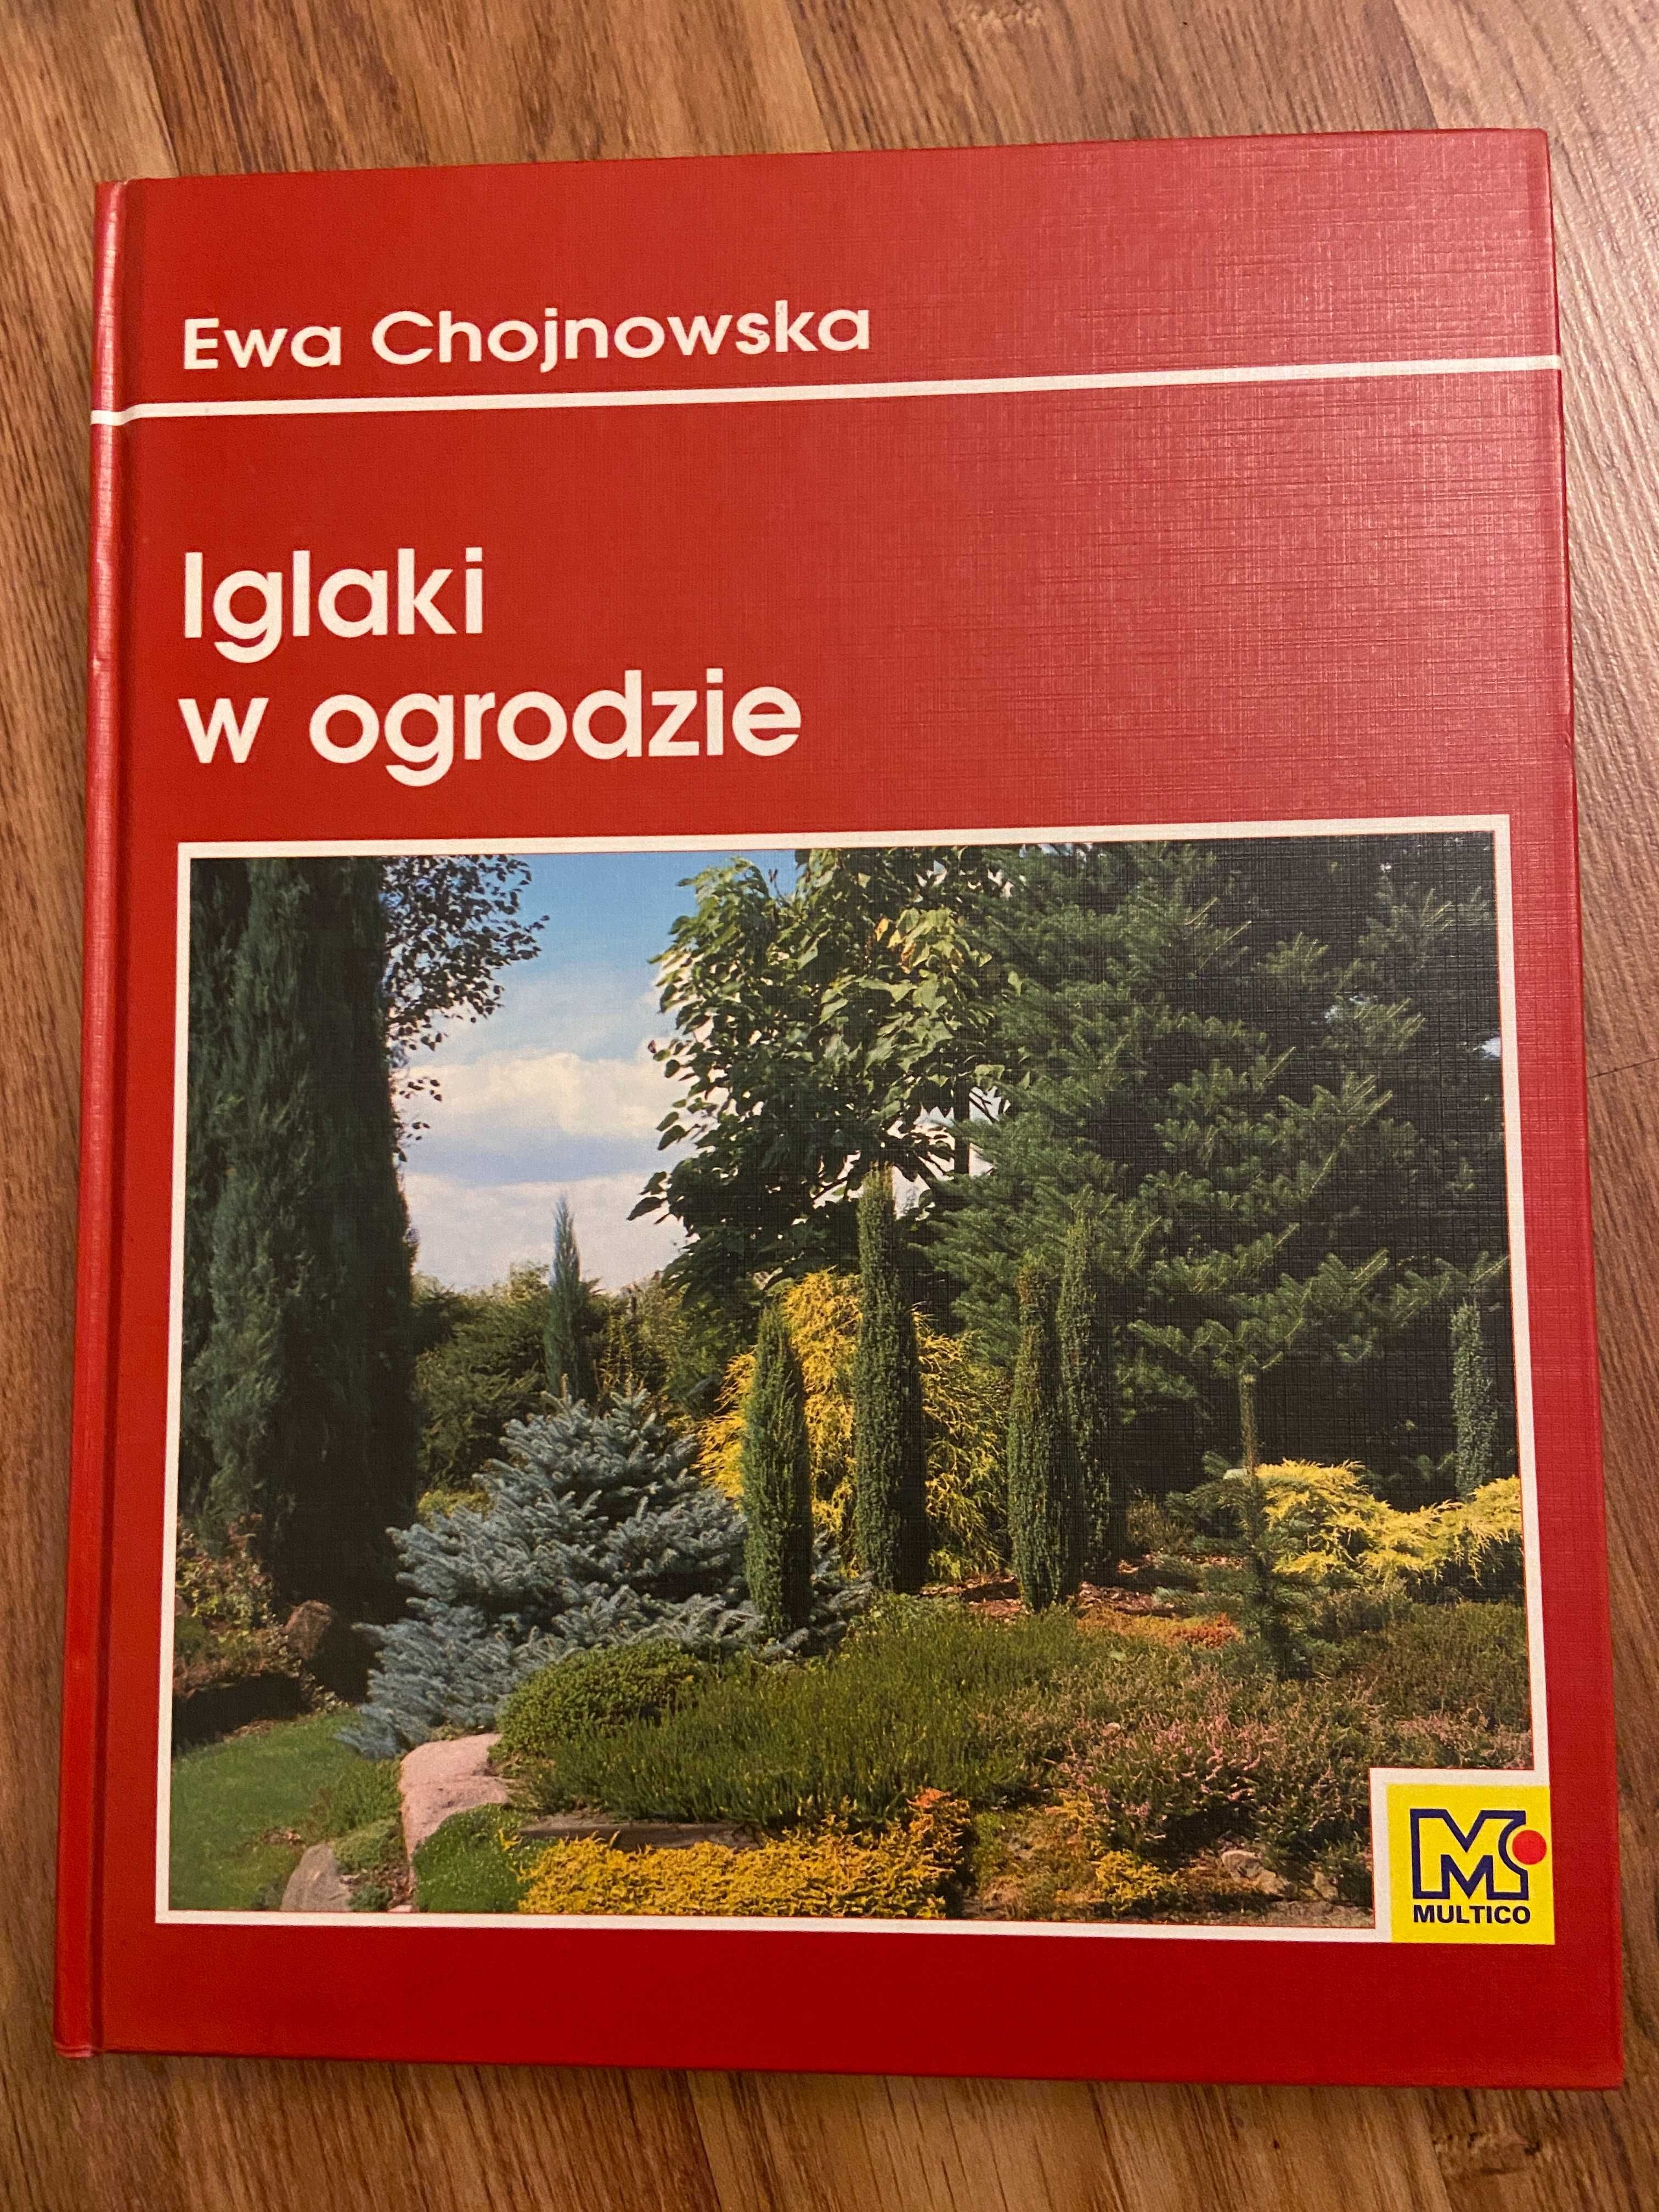 Iglaki w ogrodzie Ewa Chojnowska Multico 2000